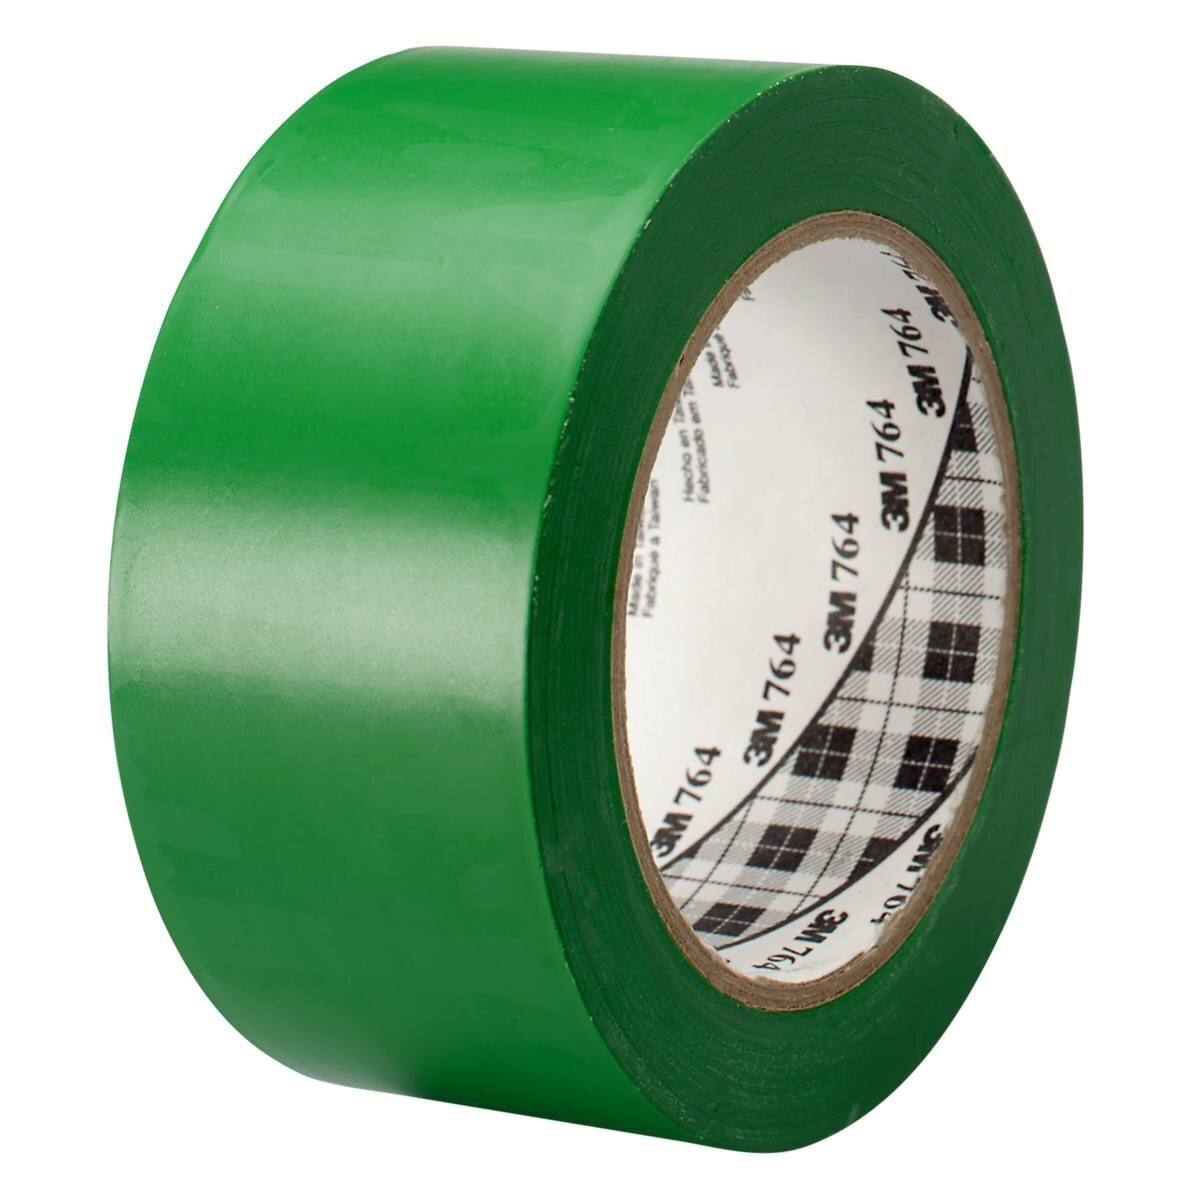 3M Cinta adhesiva multiuso de PVC 764, verde, 50 mm x 33 m, embalada individualmente en un práctico embalaje